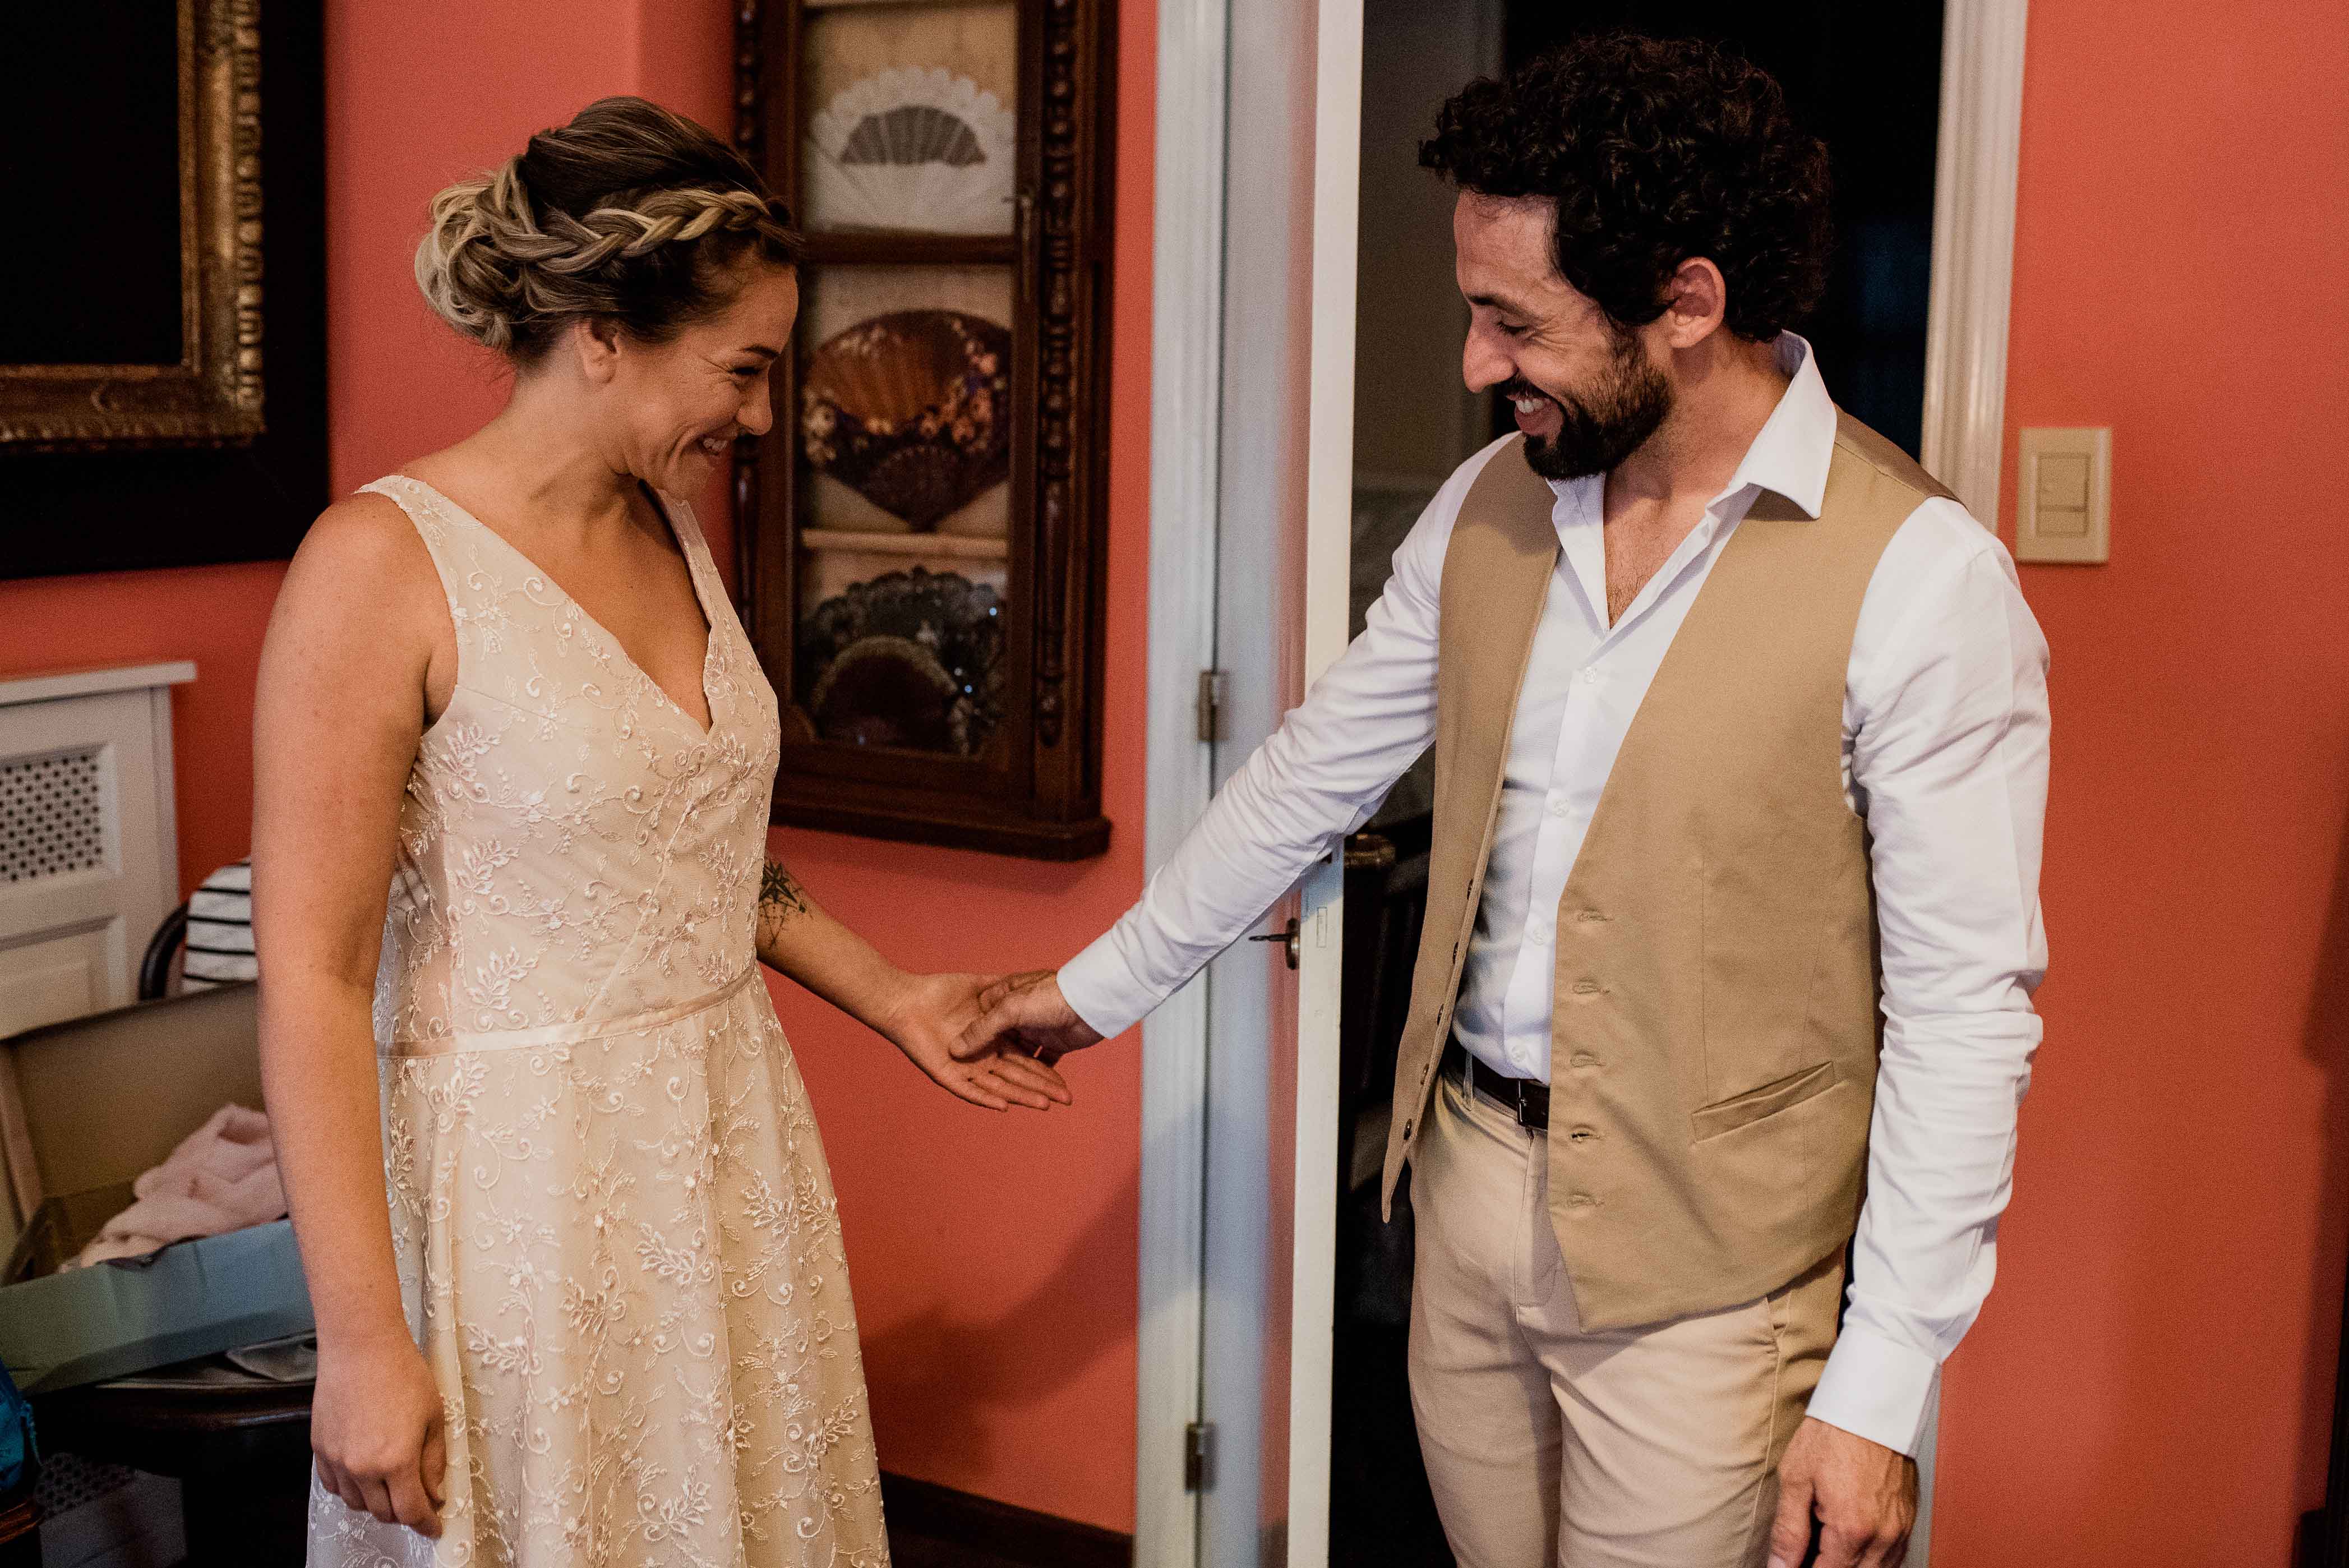 Fotos de la boda de Ana y Mauri en Rosario realizadas por Bucle Fotografias Flor Bosio y Caro Clerici